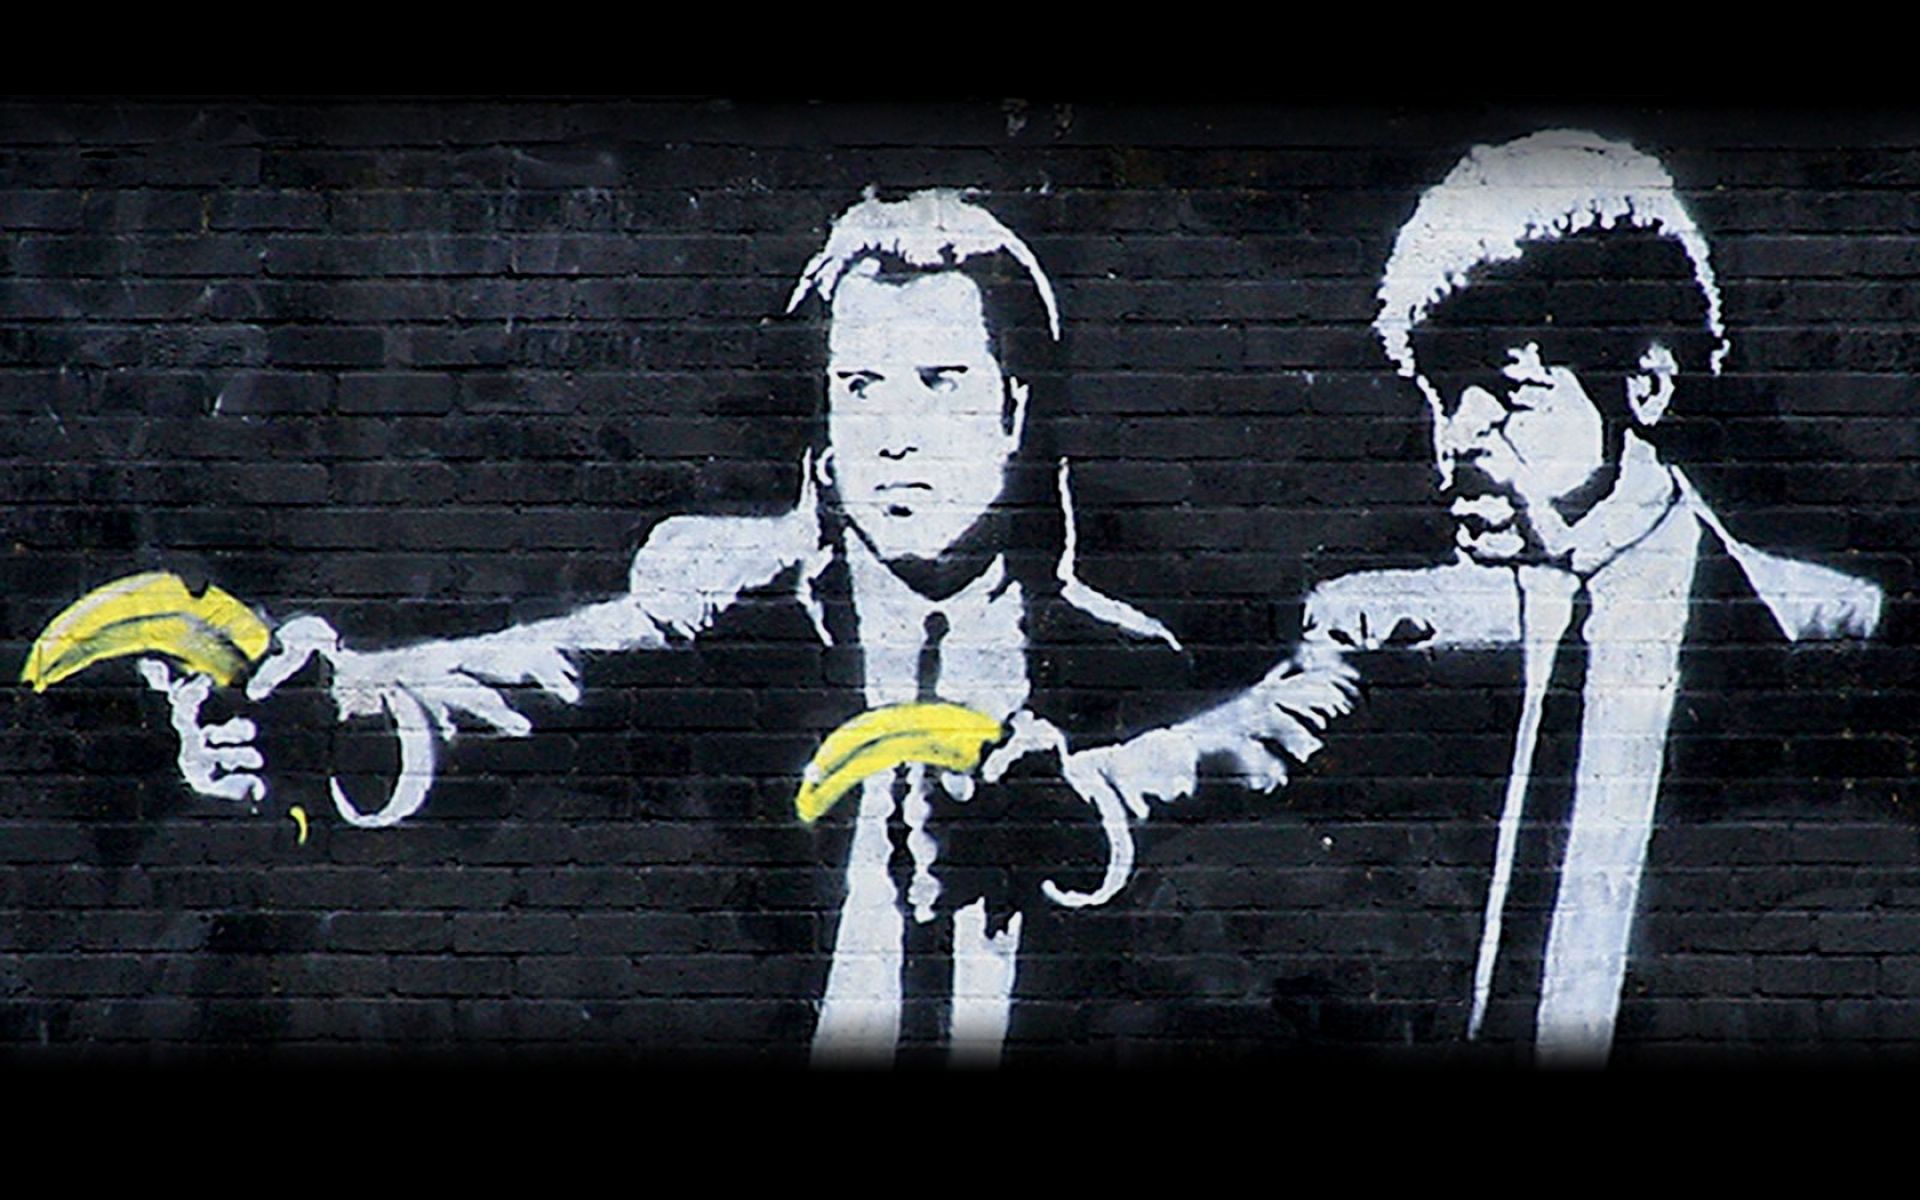 1 Pulp Fiction Street Art HD Wallpapers | Backgrounds - Wallpaper ...